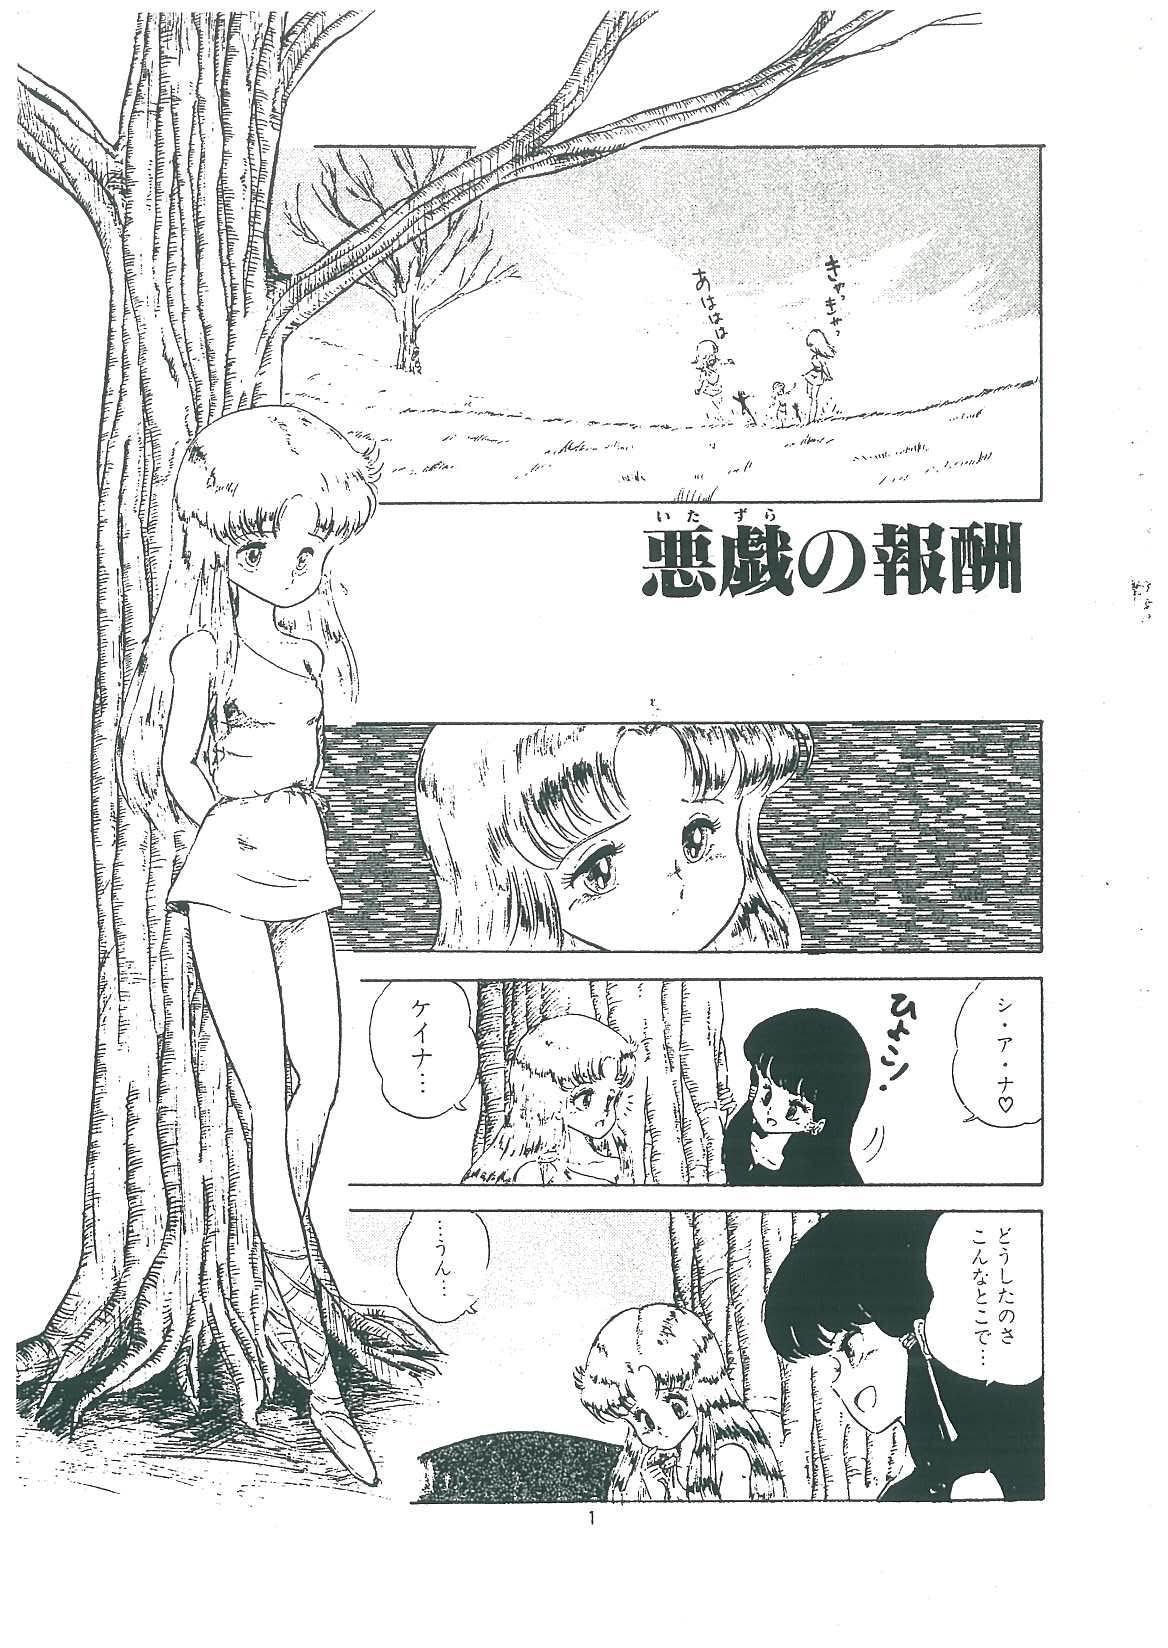 Pmv wakuwaku daimanzoku 18yearsold - Page 3